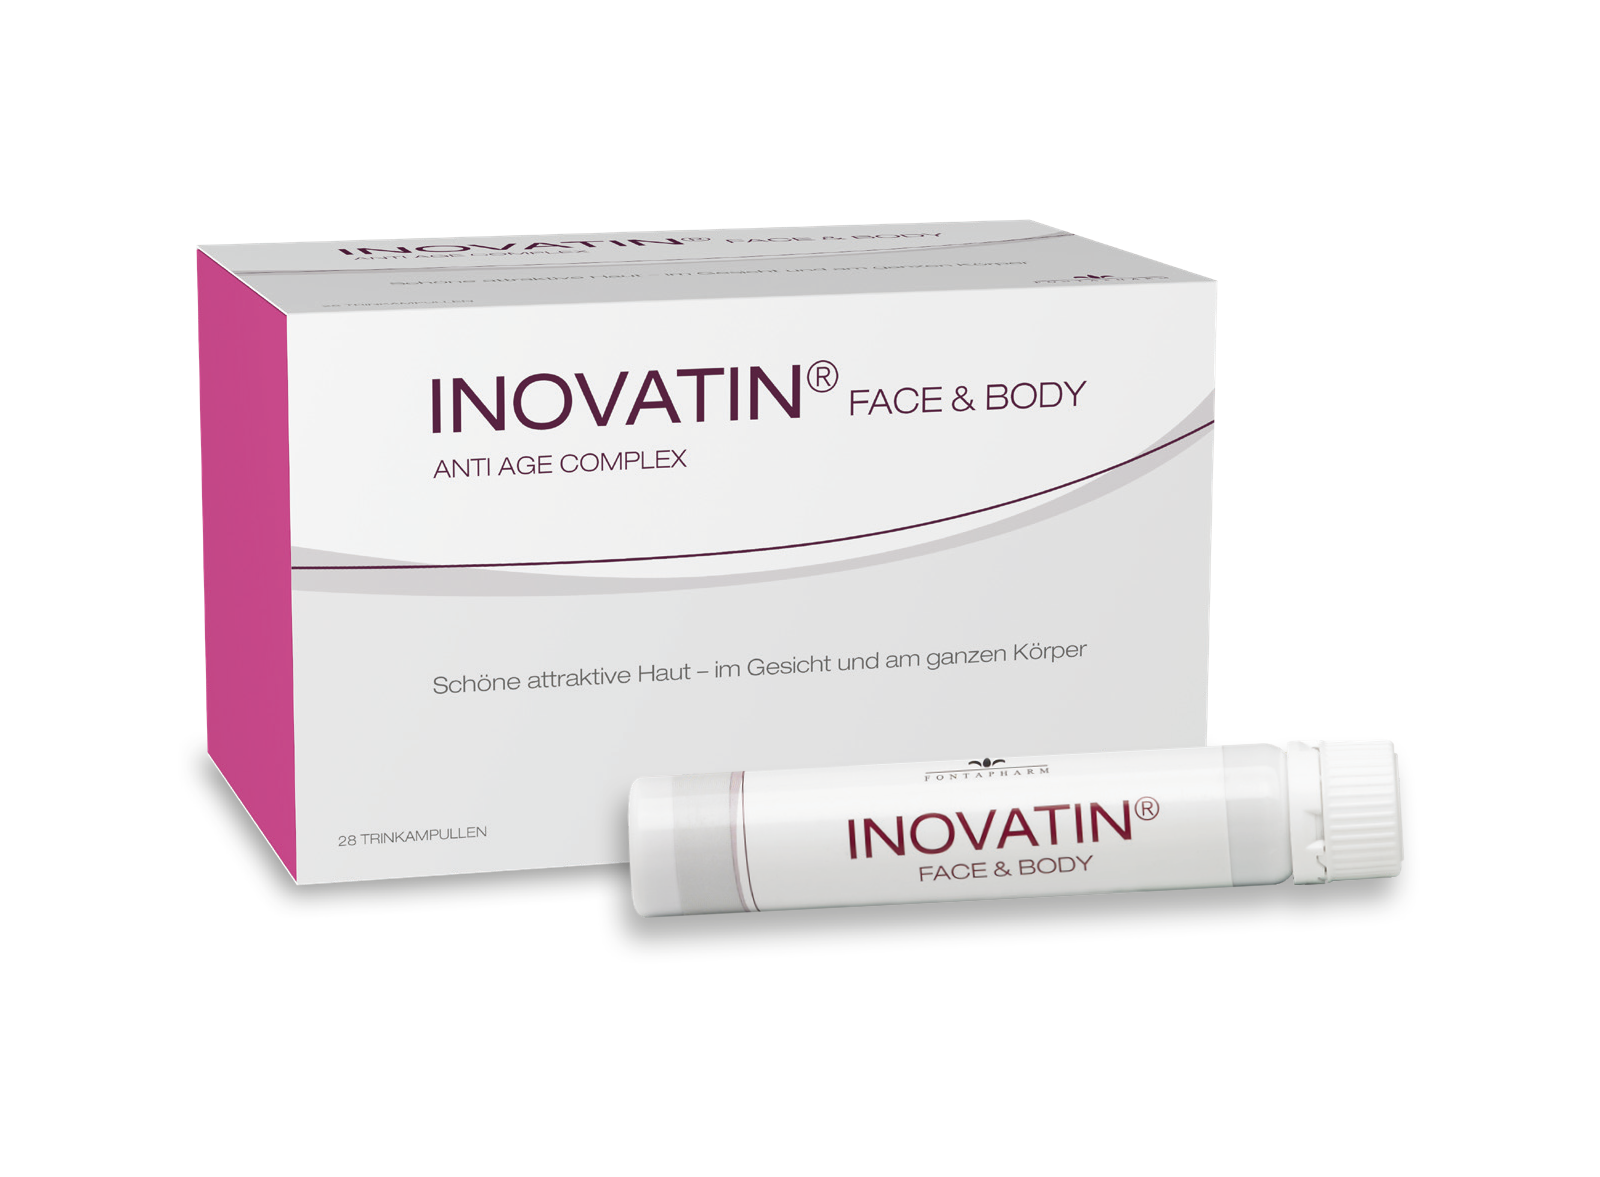 Inovatin Face and Body, die Trinkampulle für eine gezielte Versorgung mit ausgewählten Inhaltsstoffen speziell für ein gesundes Hautbild